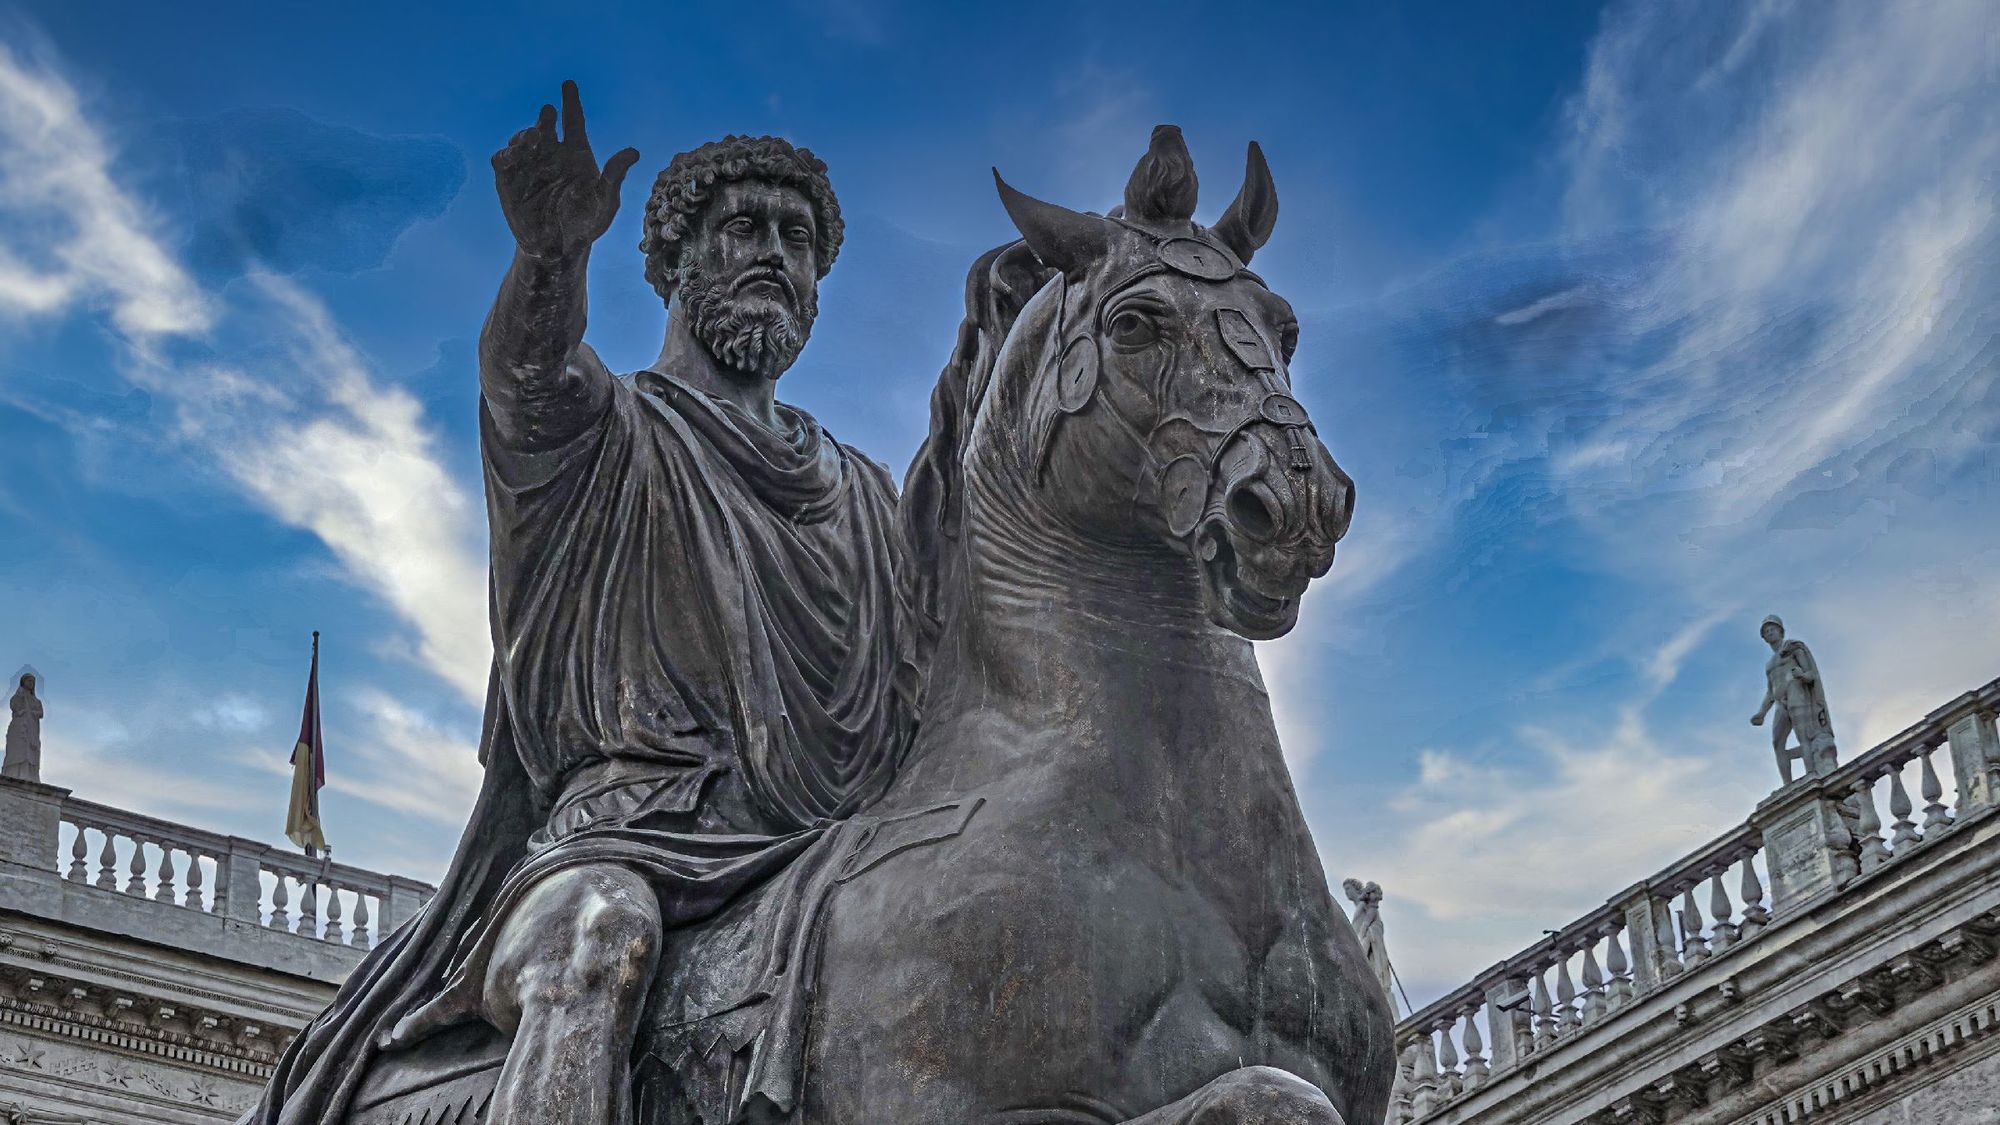 Statue of Marcus Aurelius in Rome, Italy